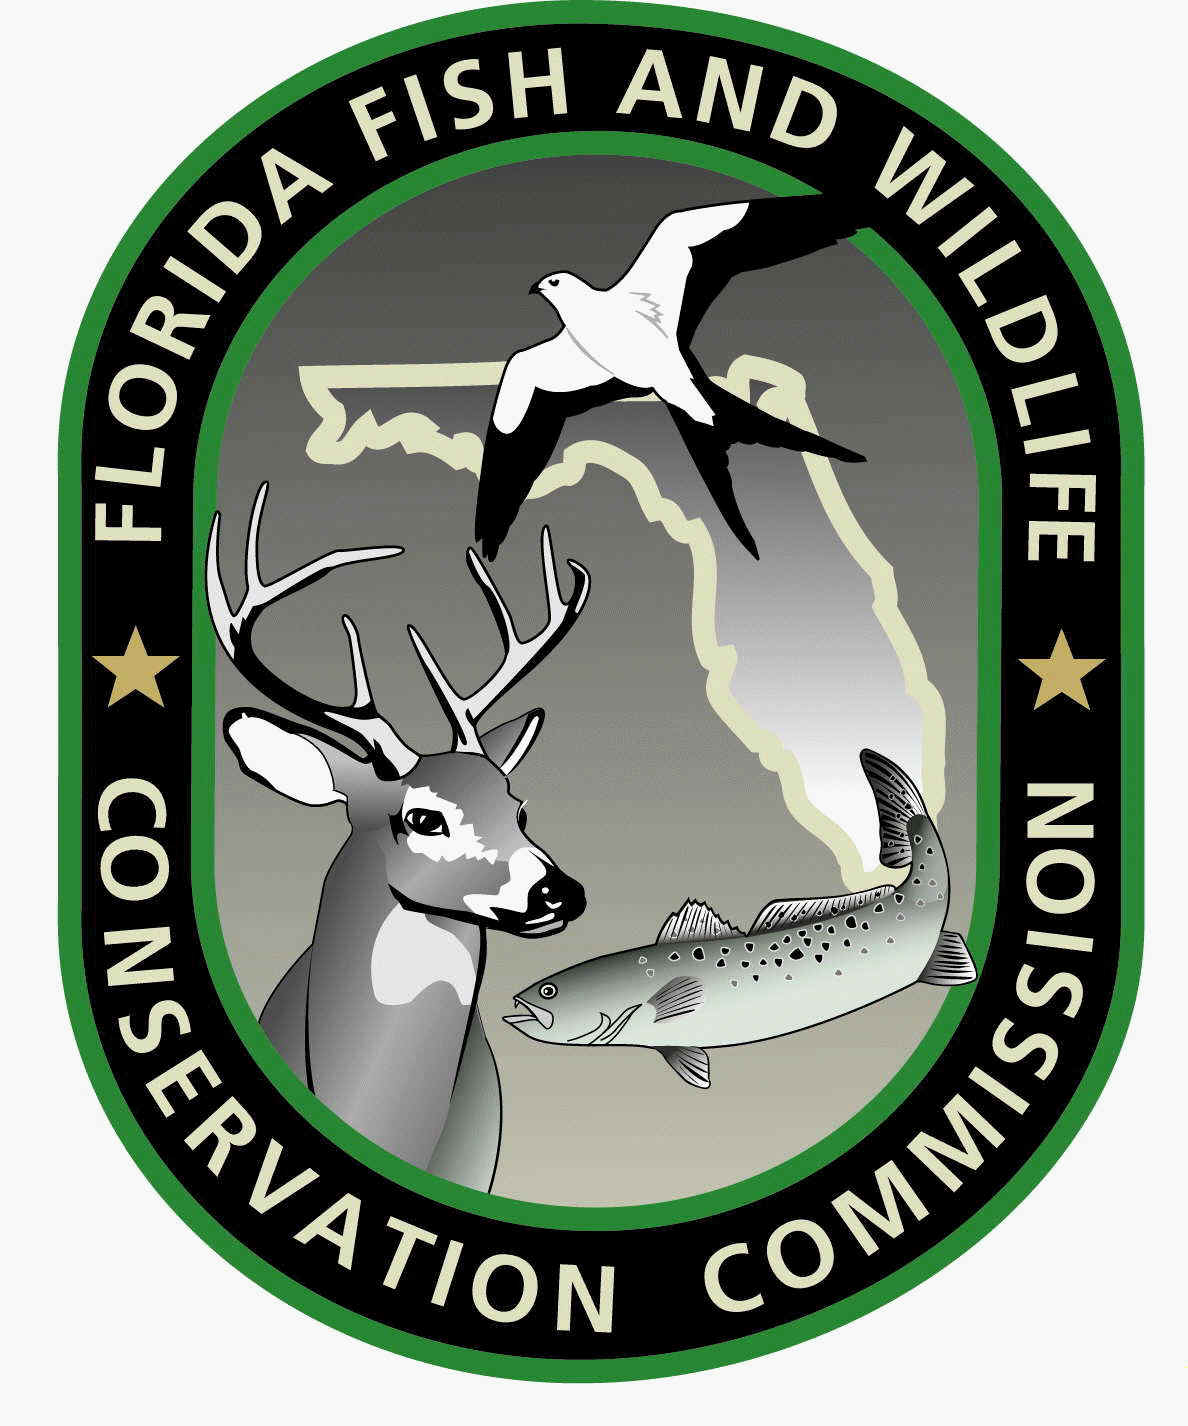 Florida Fishing Logo - Florida-Fish-And-Wildlife-Commission-Conservation-LOGO ...